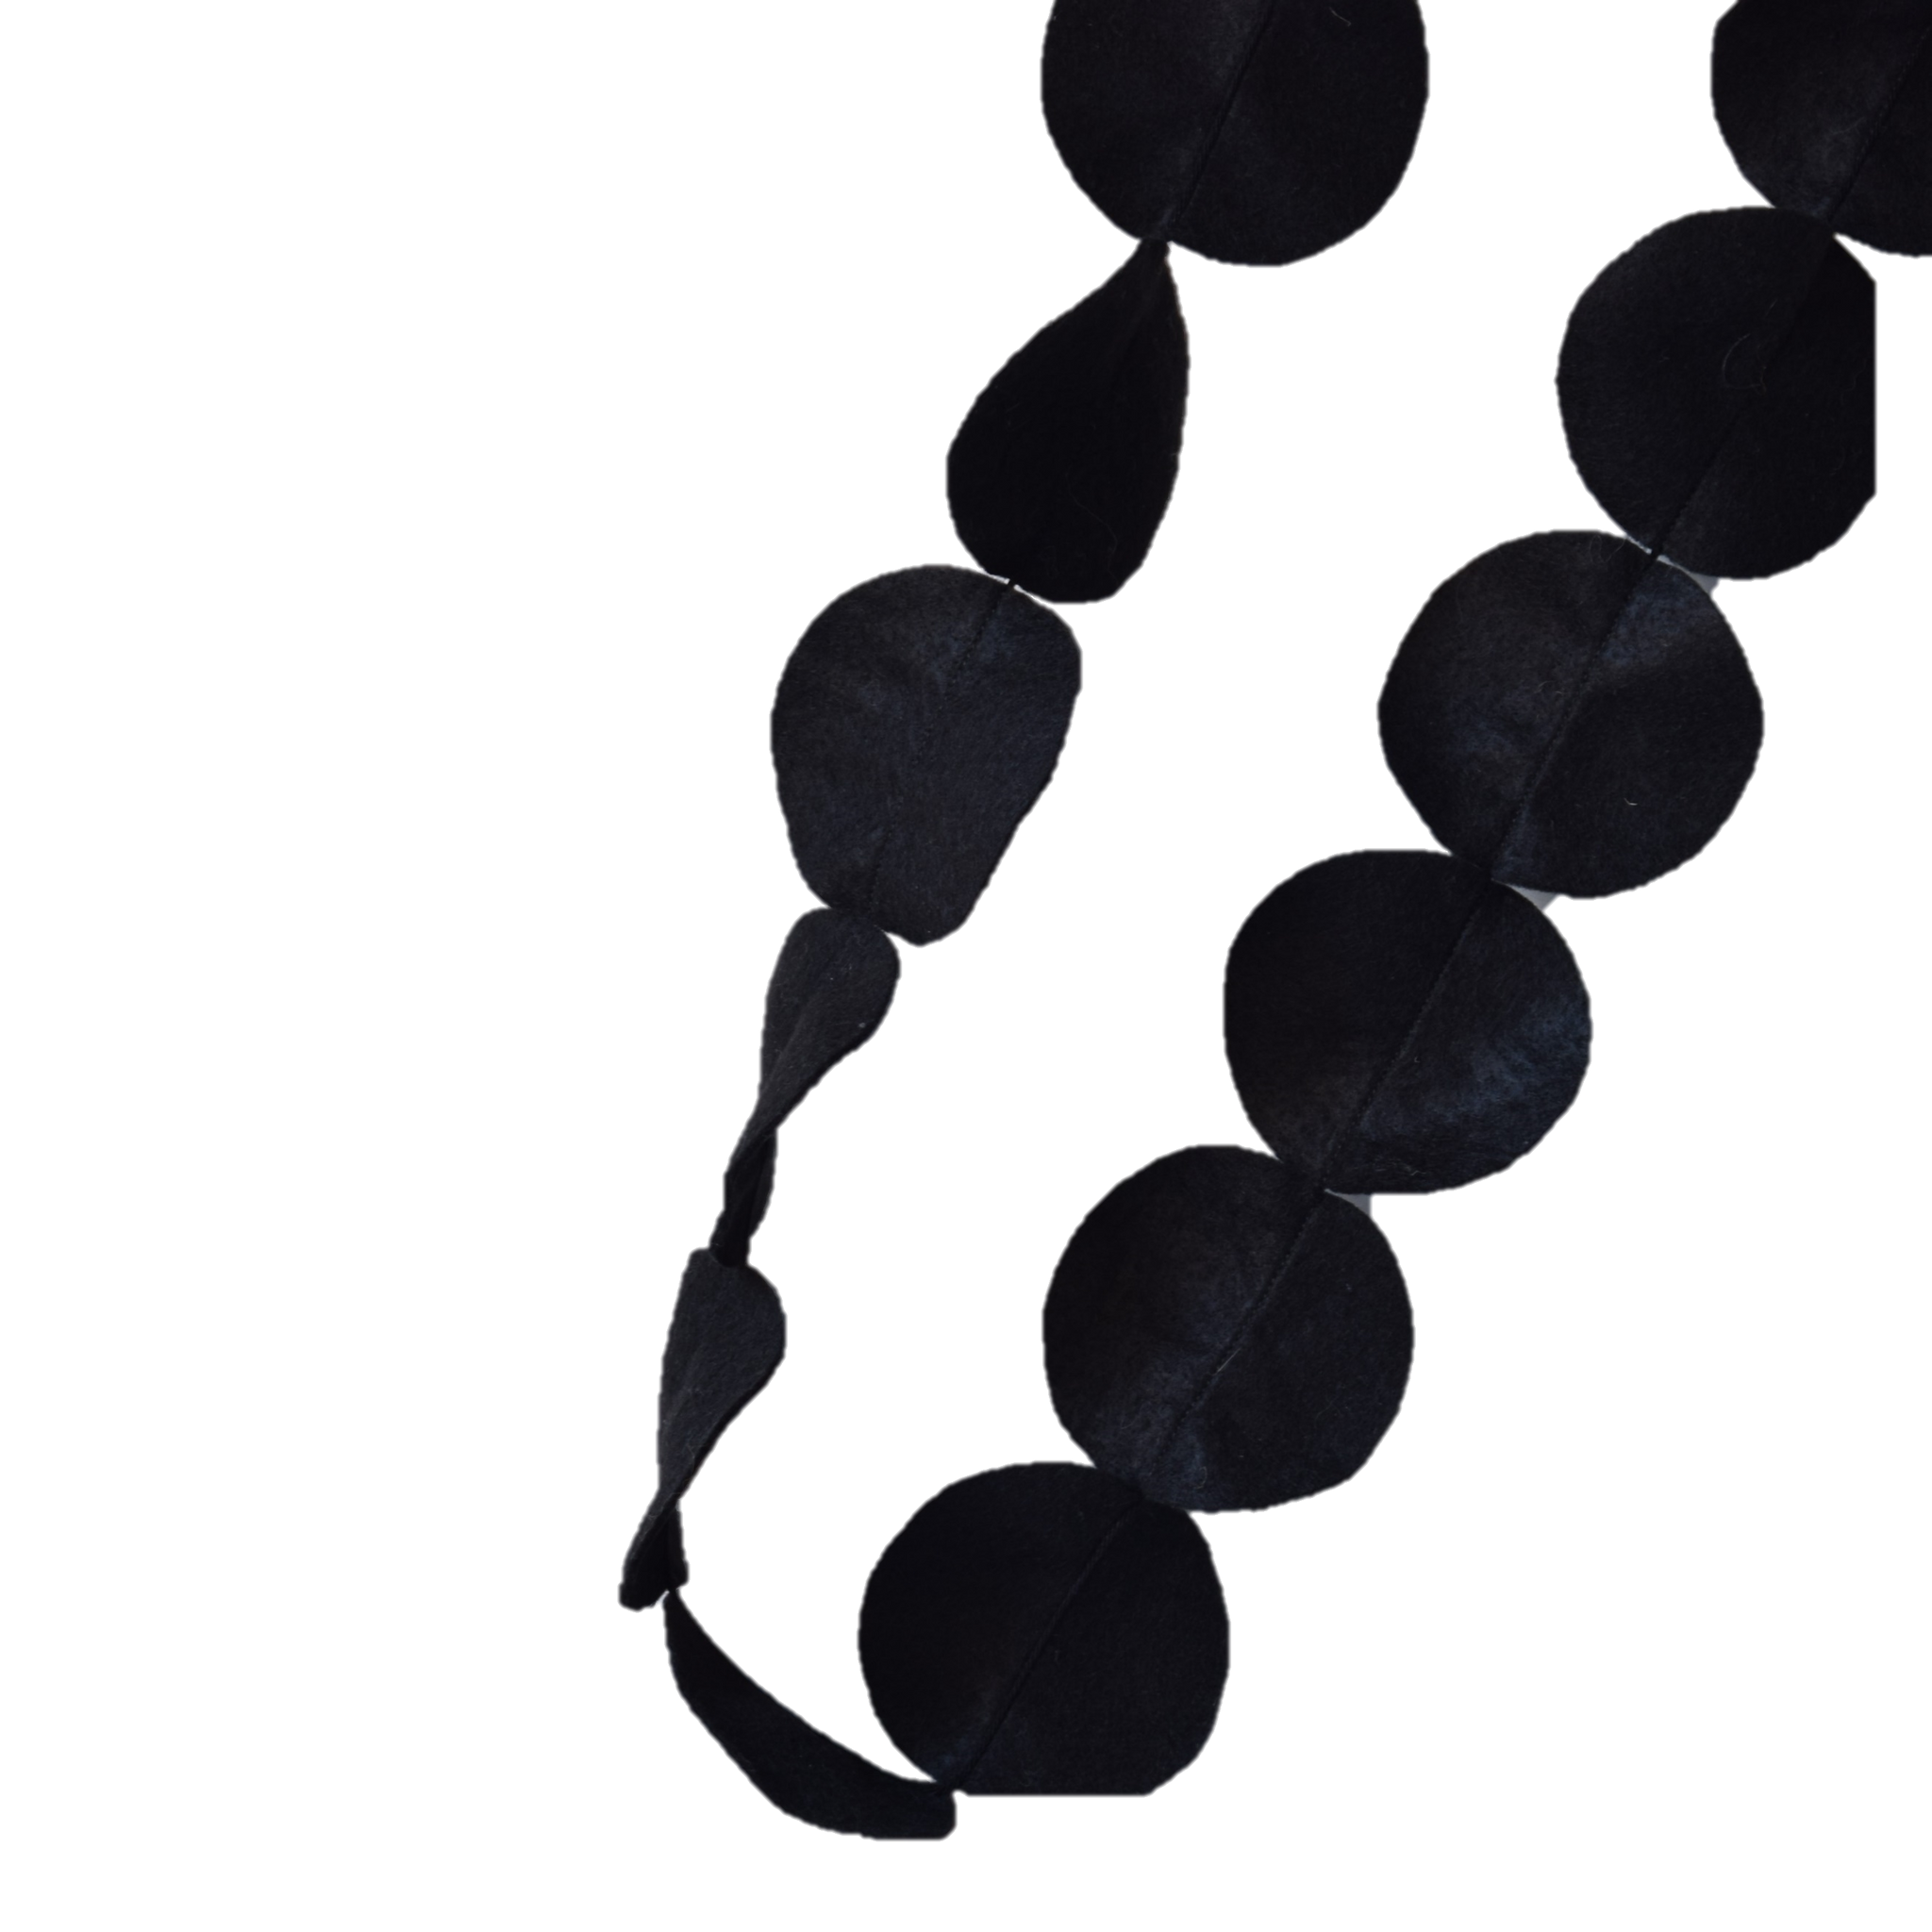 zwart-slingertje-vilt-rondjes-mevrouwkraai